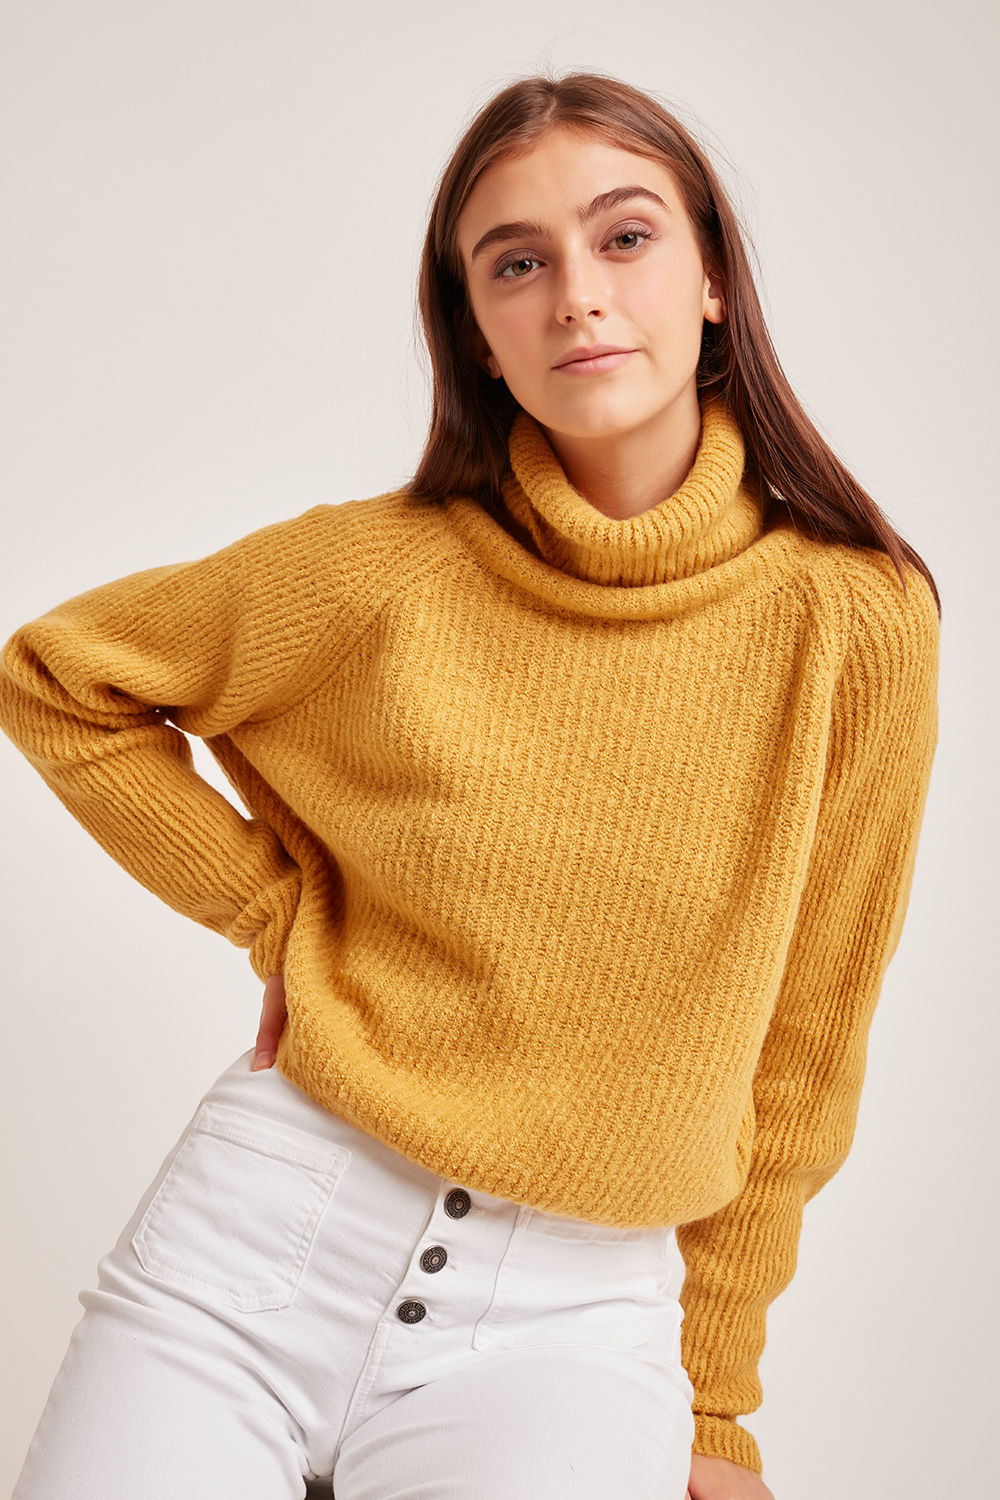 Turtleneck raglan sweater